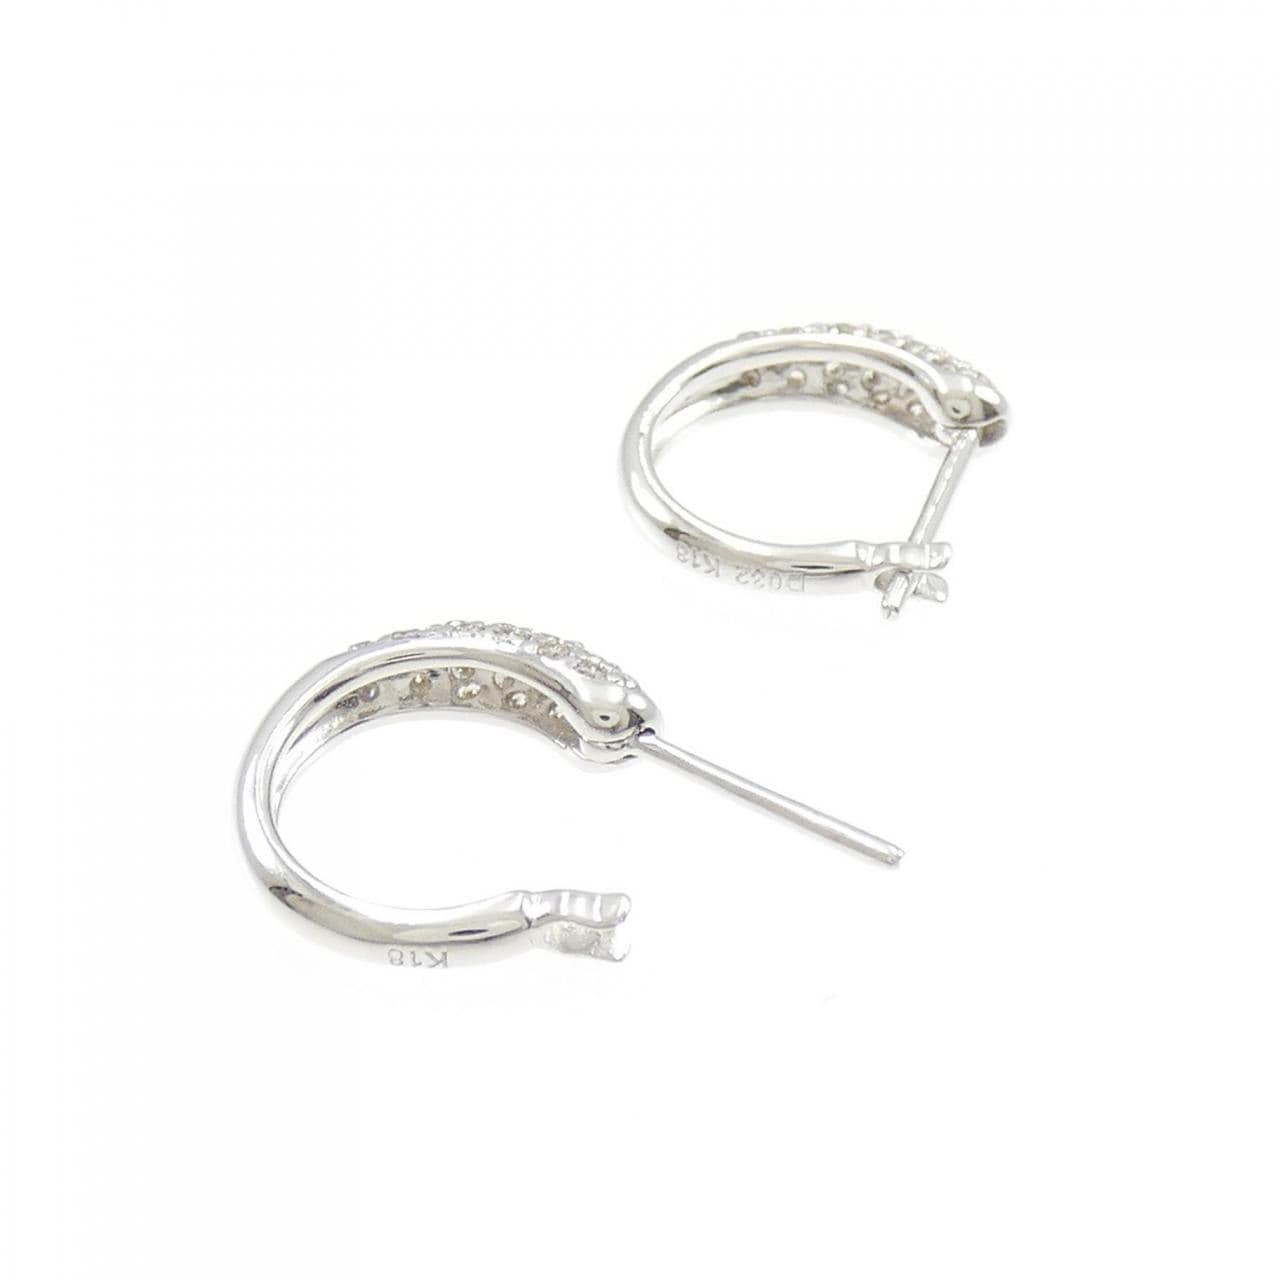 K18WG Pave Diamond Earrings 0.32CT